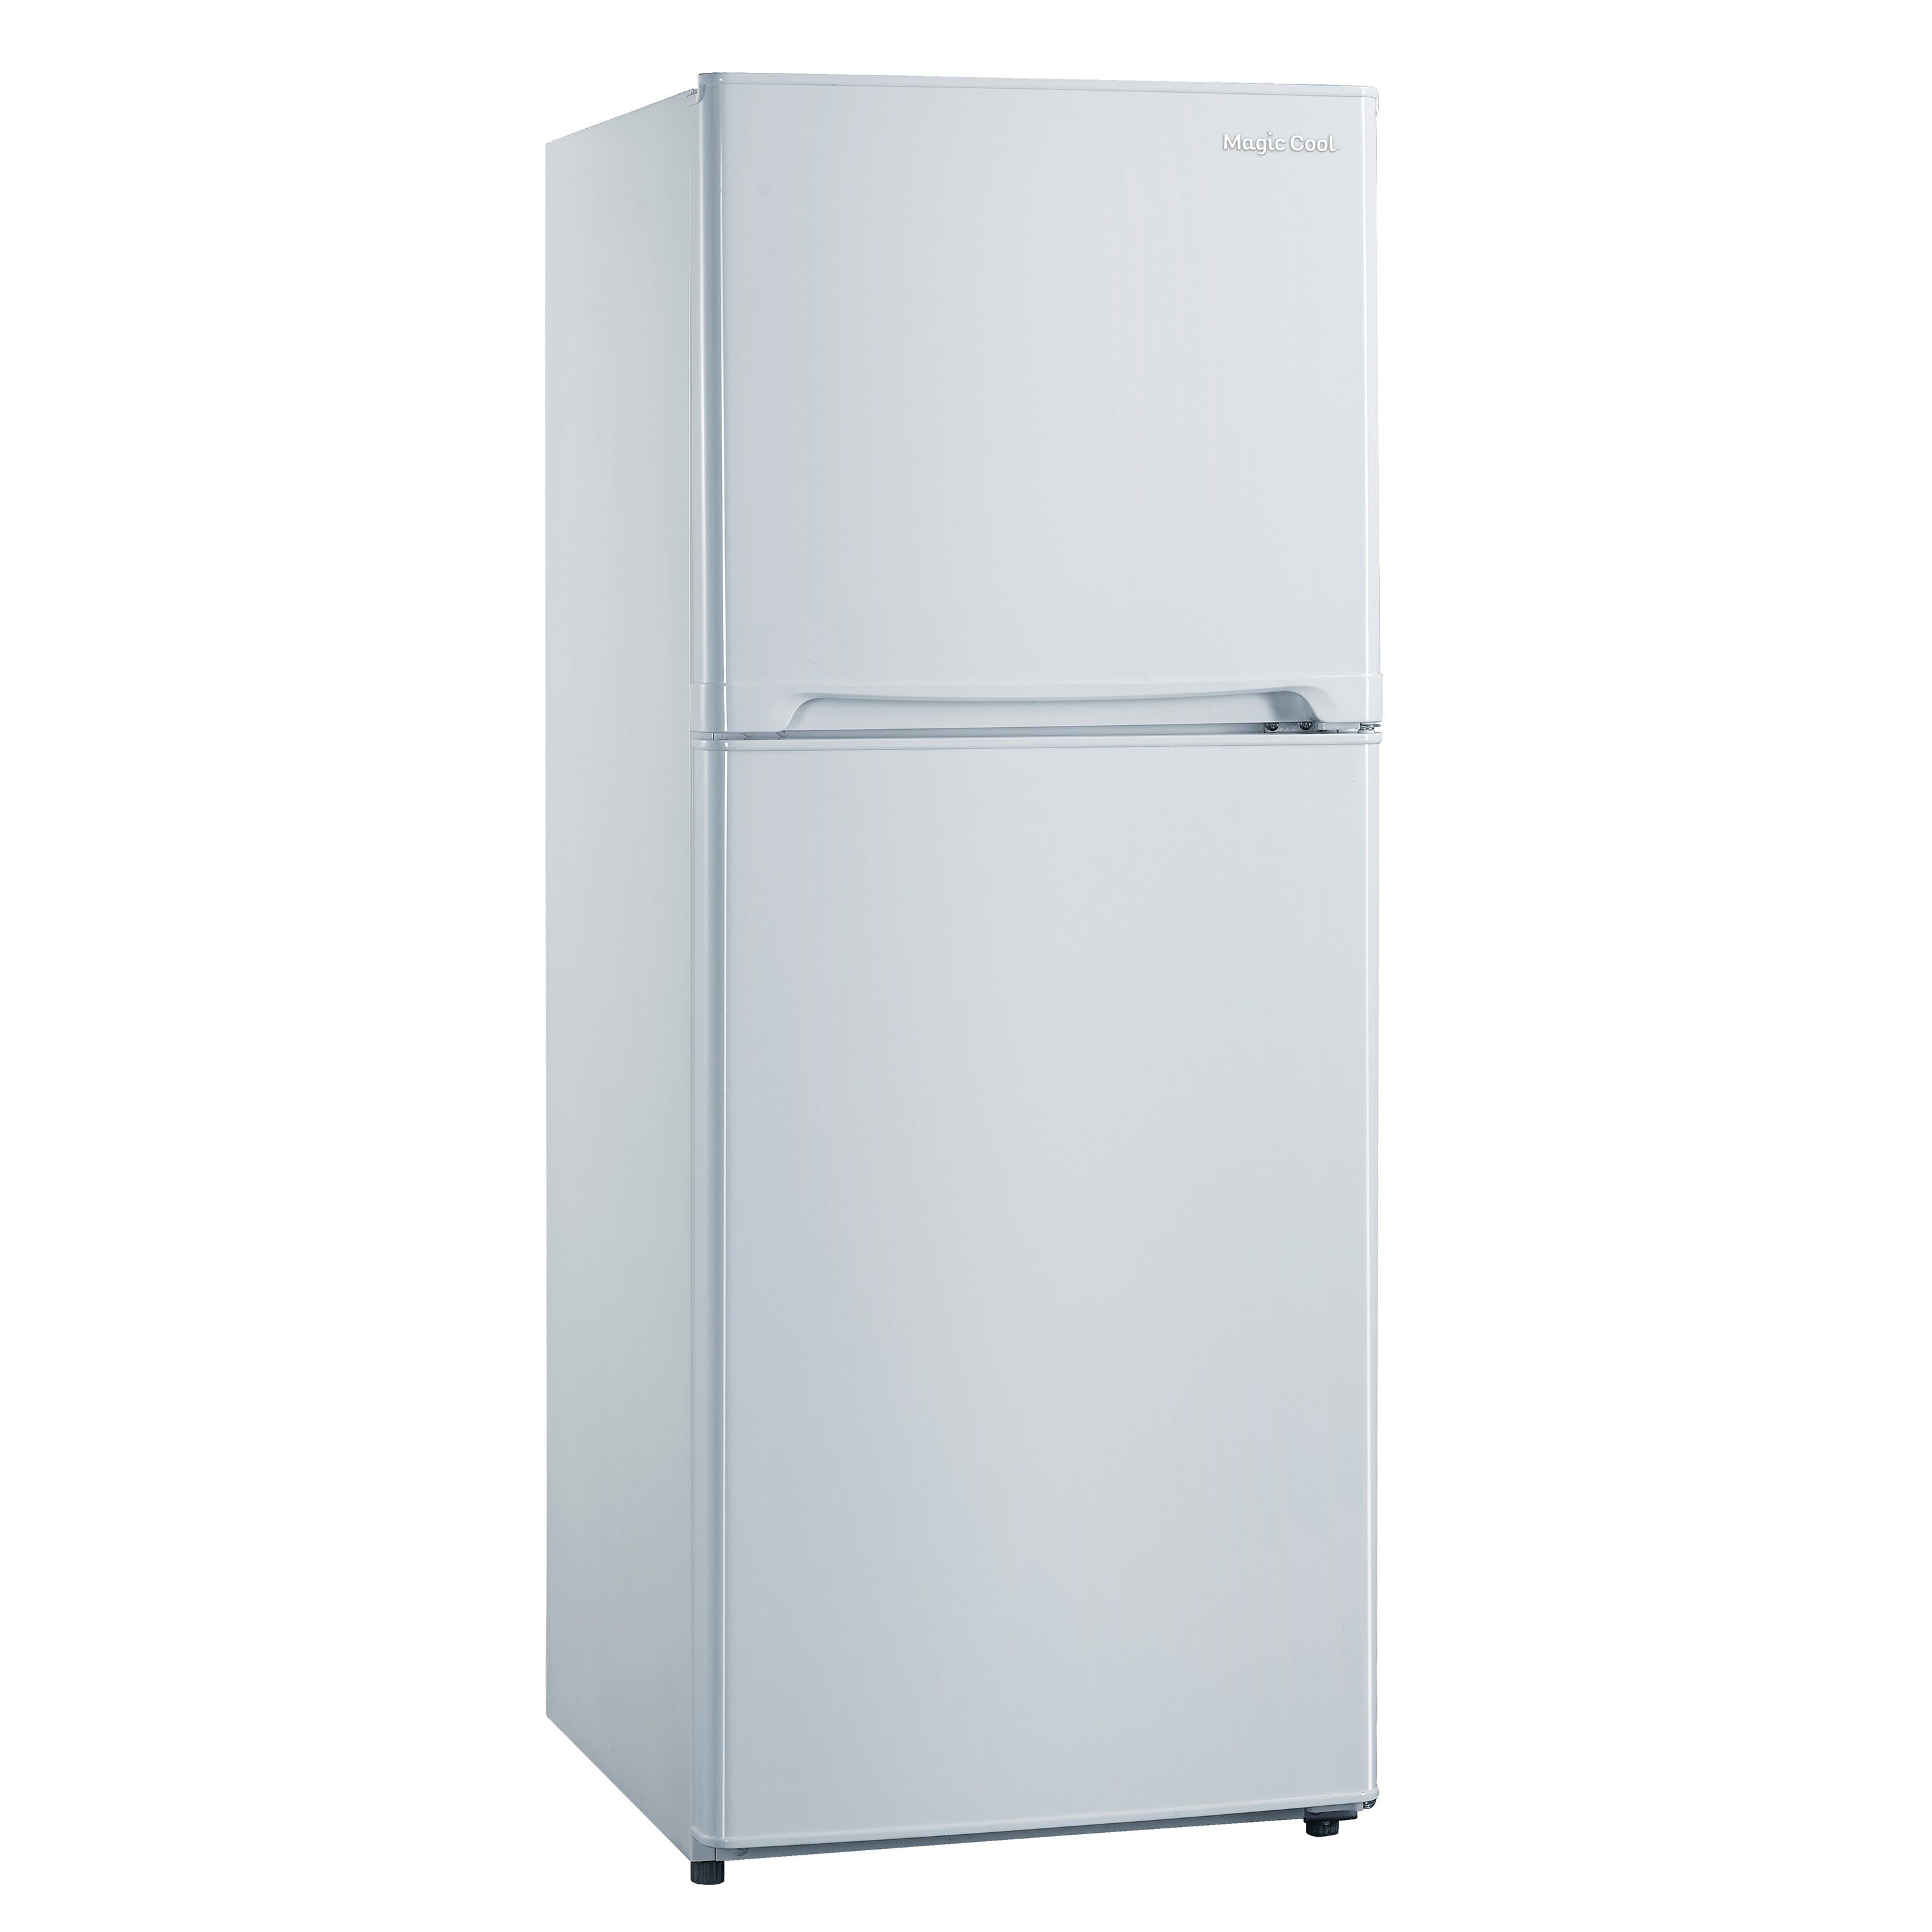 Magic Cool - MCR10WI, Magic Cool 10.0 cu. ft. Reach-In Refrigerator, in White